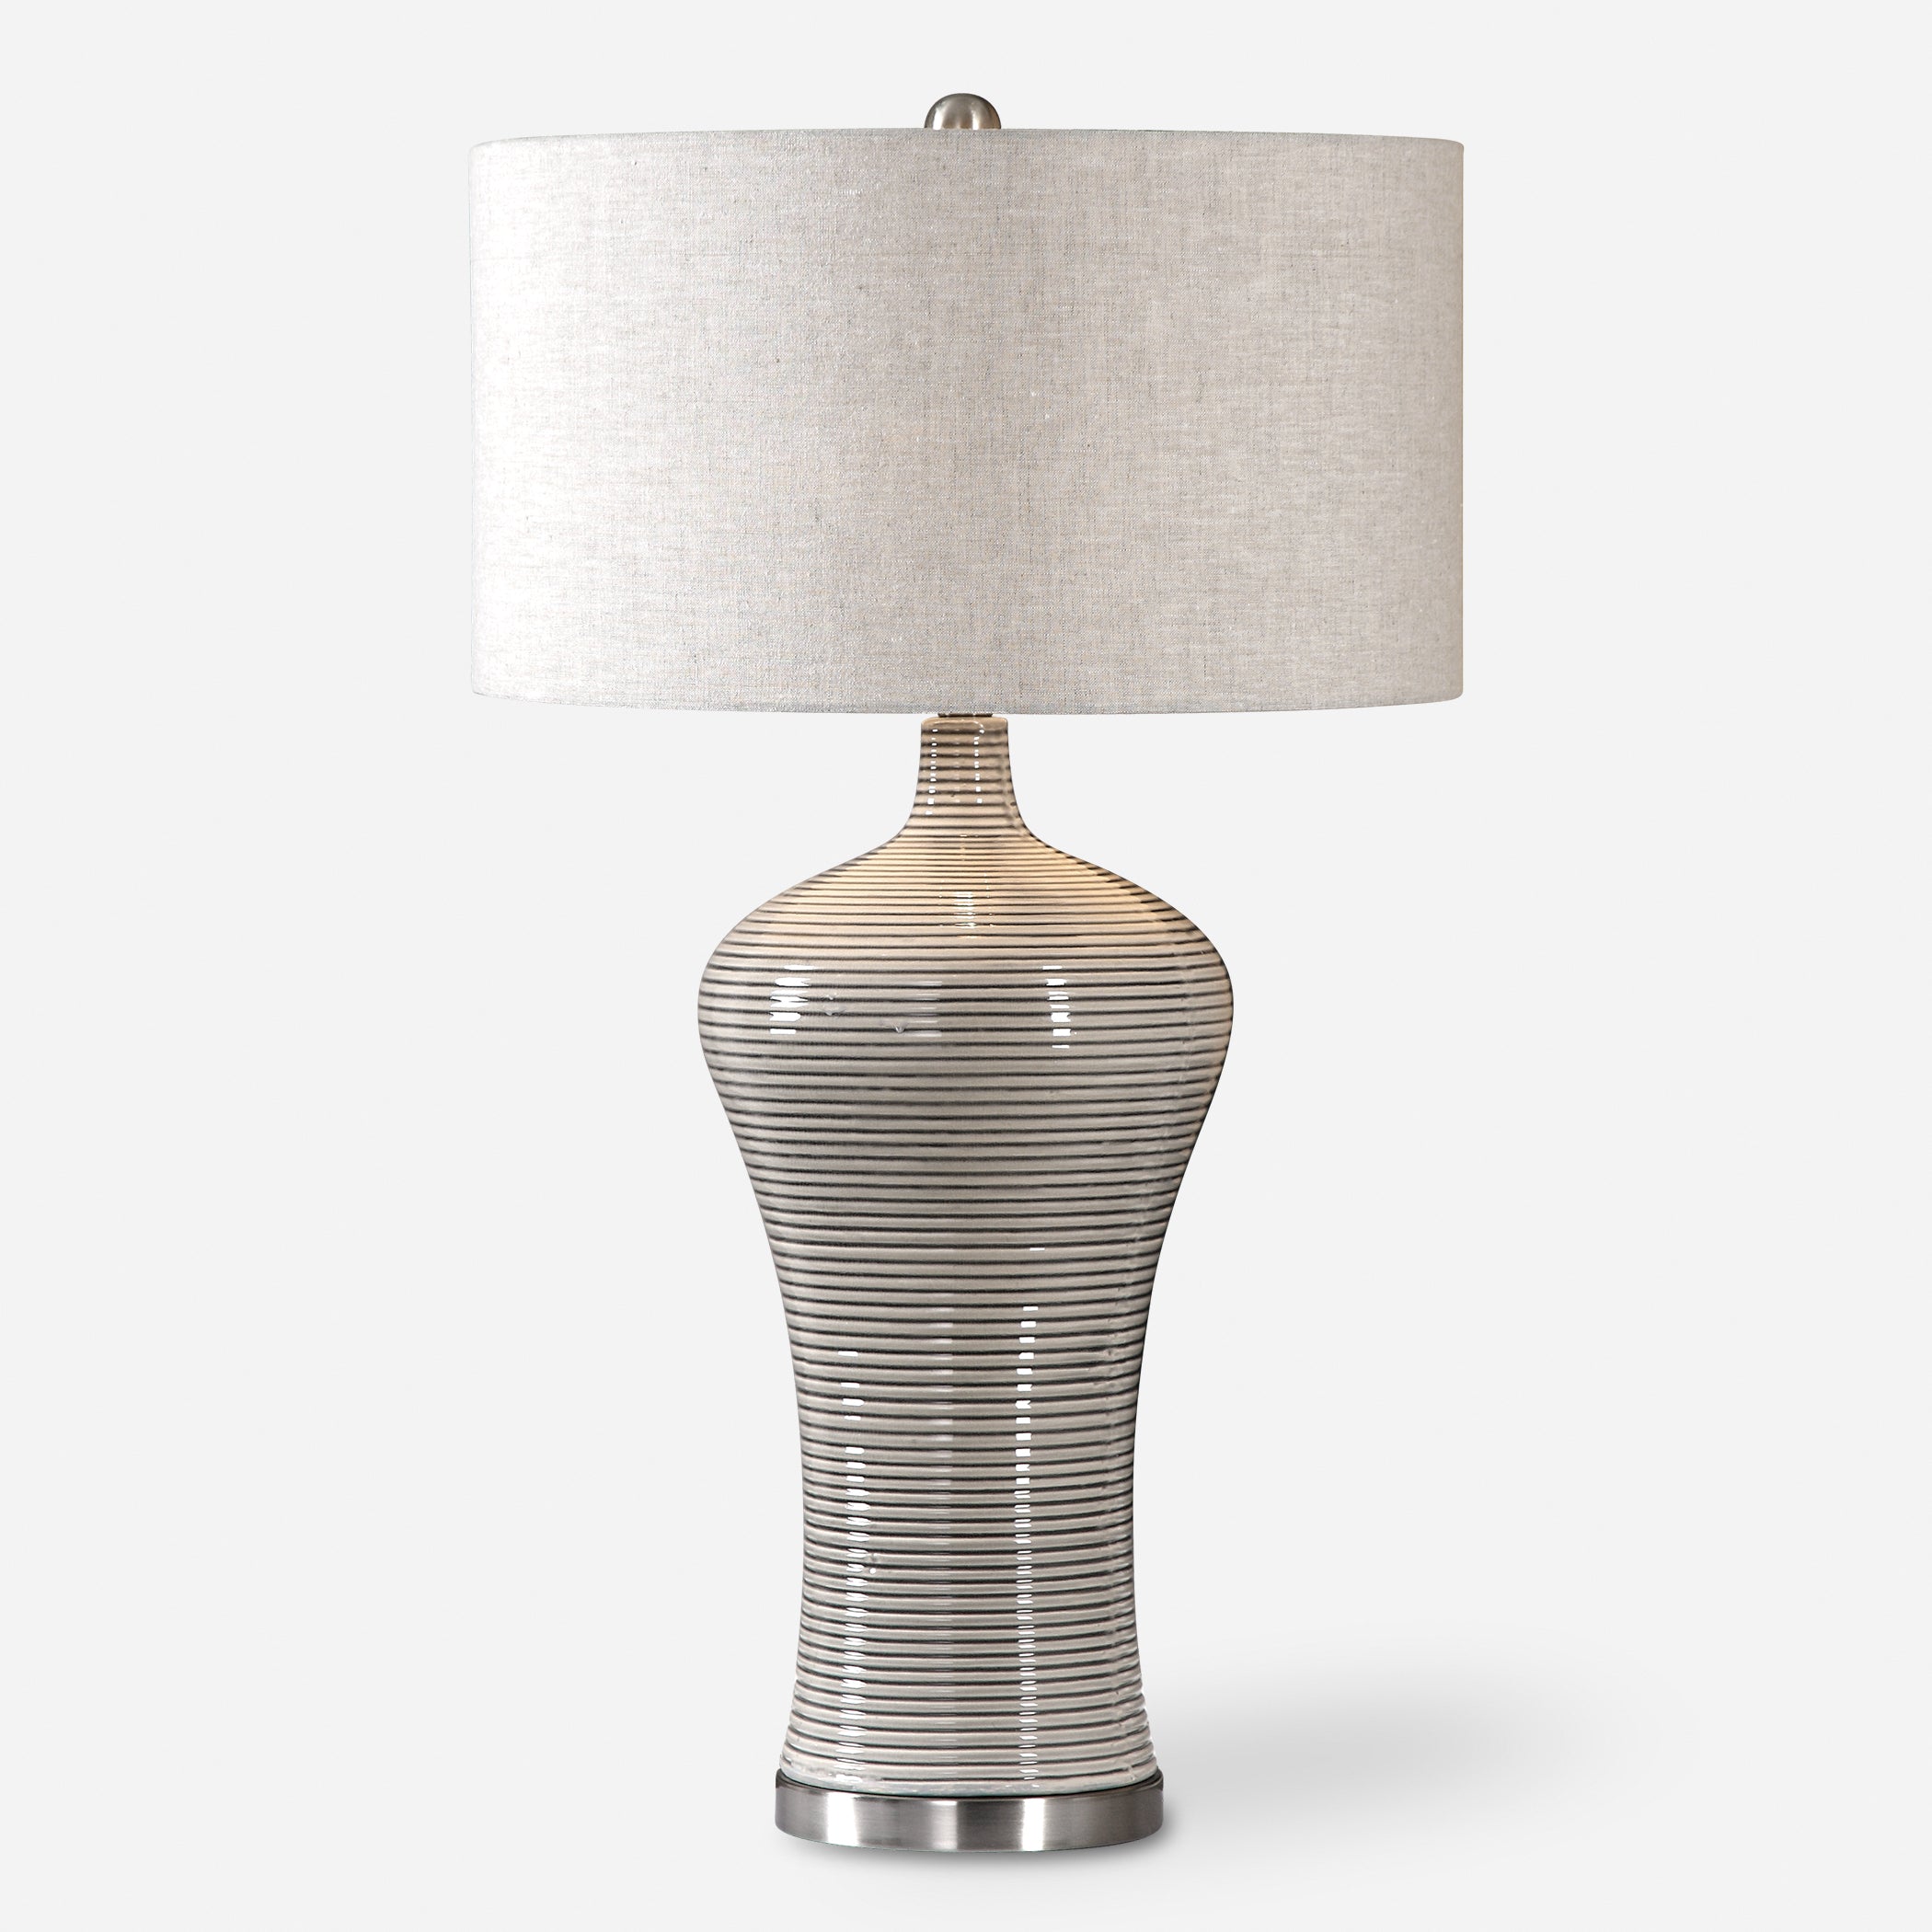 Uttermost Dubrava Light Gray Table Lamp